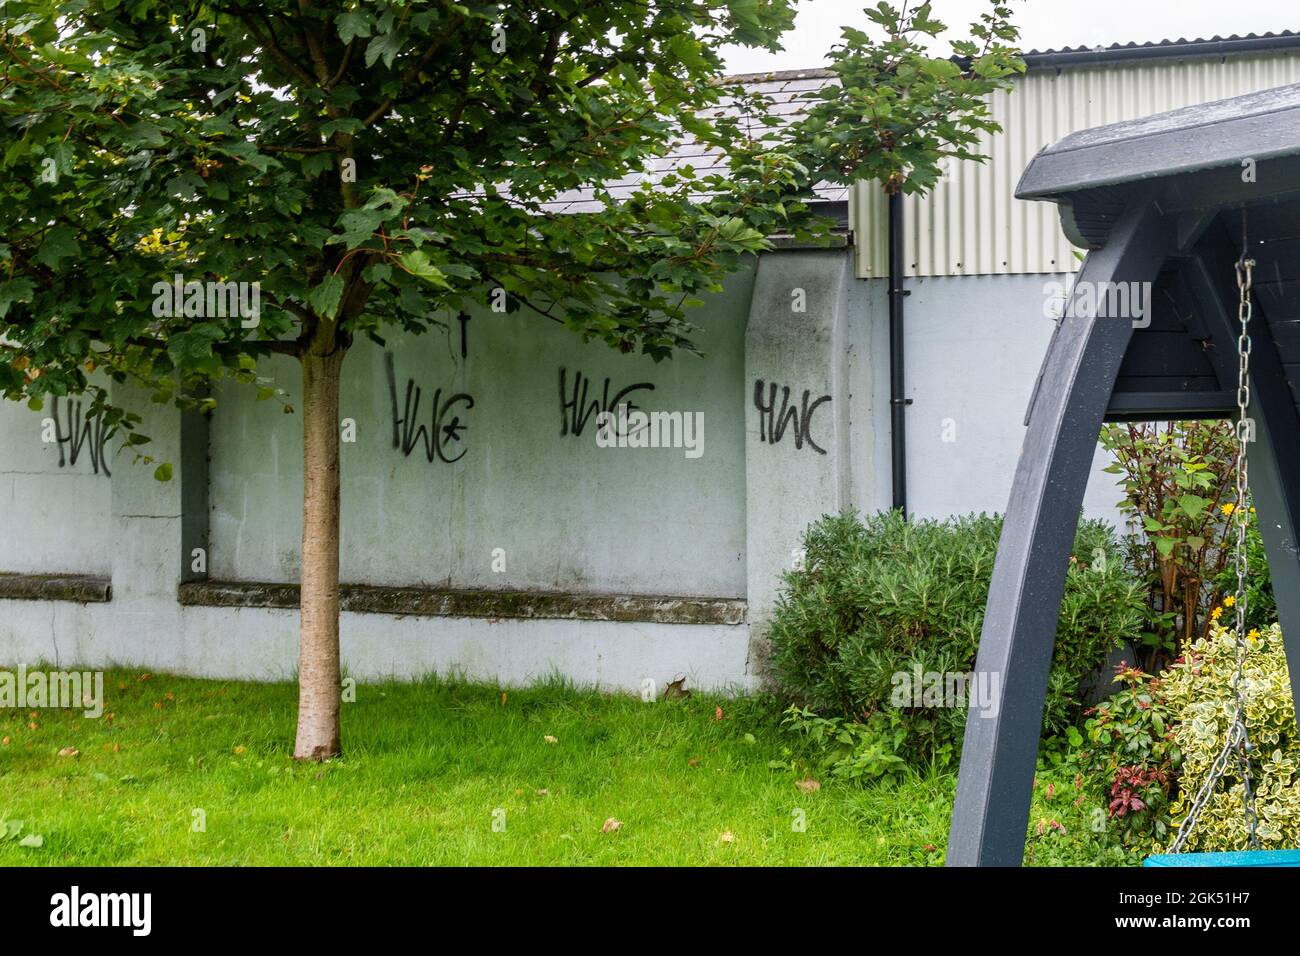 Clonakilty, West Cork, Irland. September 2021. Die Einheimischen von Clonakilty erwachten heute Morgen in einer Stadt, die mit Graffiti übersät war. Das Wandgemälde von Michael Collins in der Kent Street in der Stadt wurde ebenso wie andere Orte in der Stadt stark beschädigt. Ein Mann wurde wegen des Verdachts der Begehung des Verbrechens verhaftet. Quelle: AG News/Alamy Live News Stockfoto